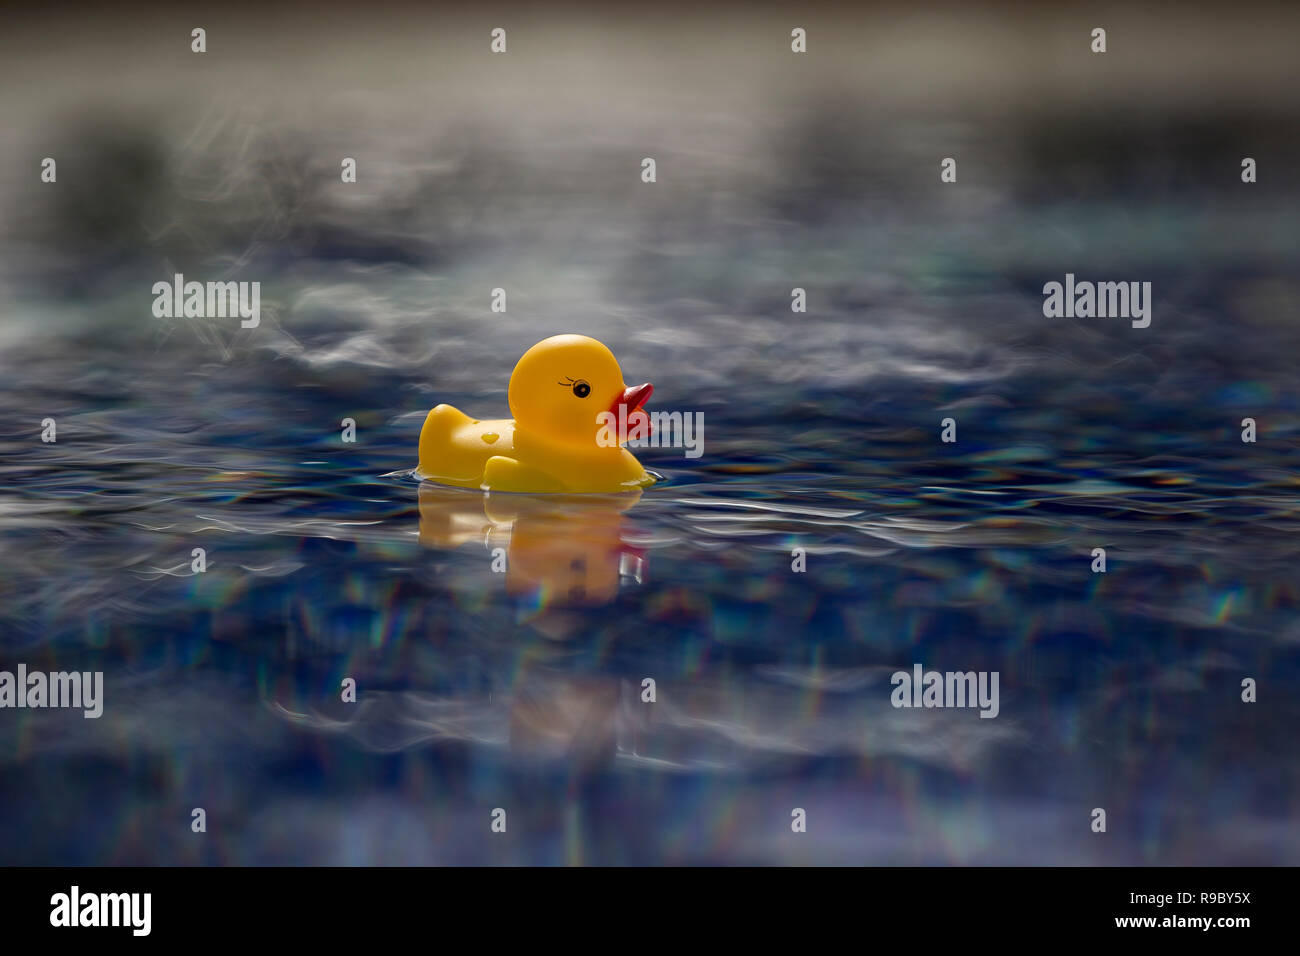 Rubber Duck Baby toy galleggianti in piscina in acqua riflettente Foto Stock